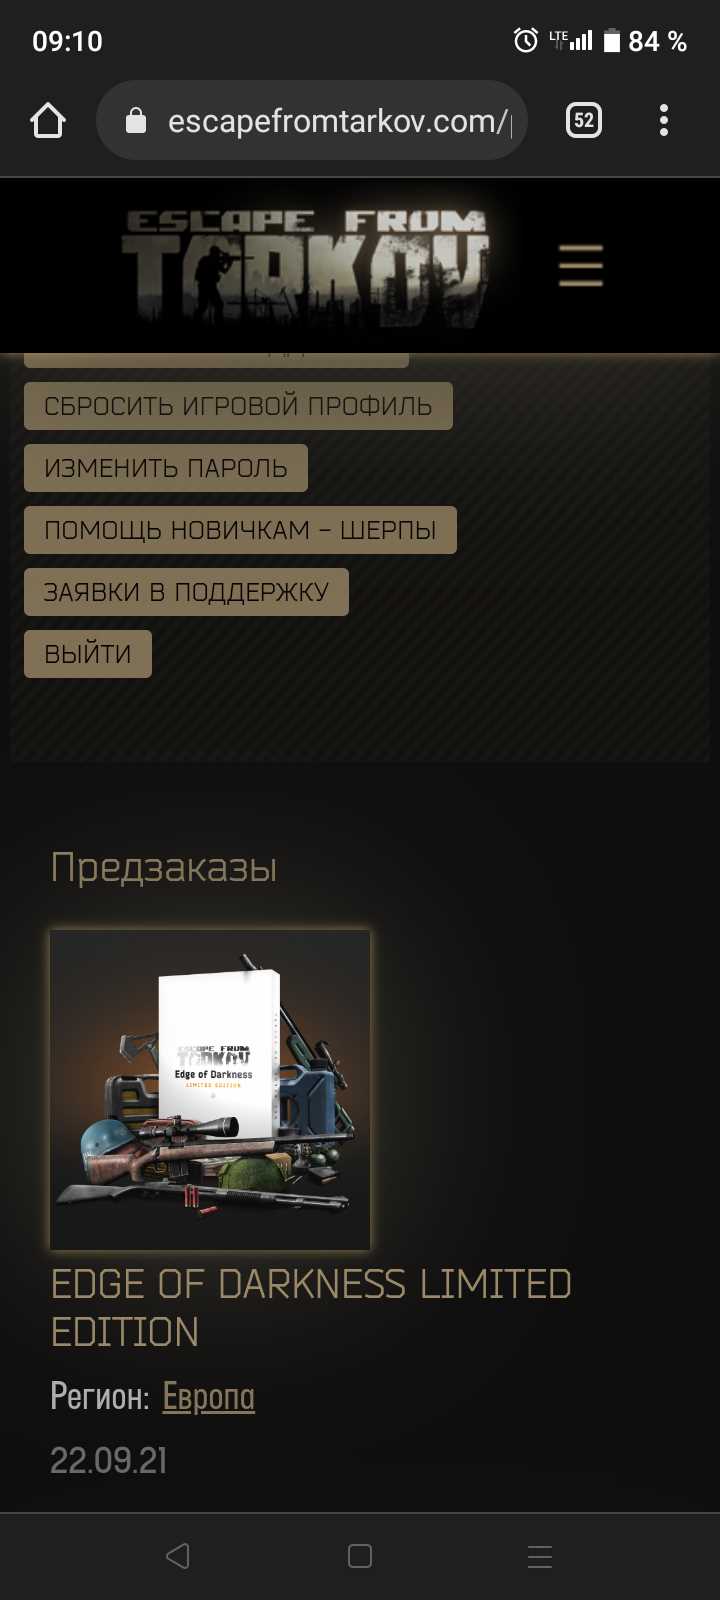 продажа аккаунта к игре Escape from Tarkov